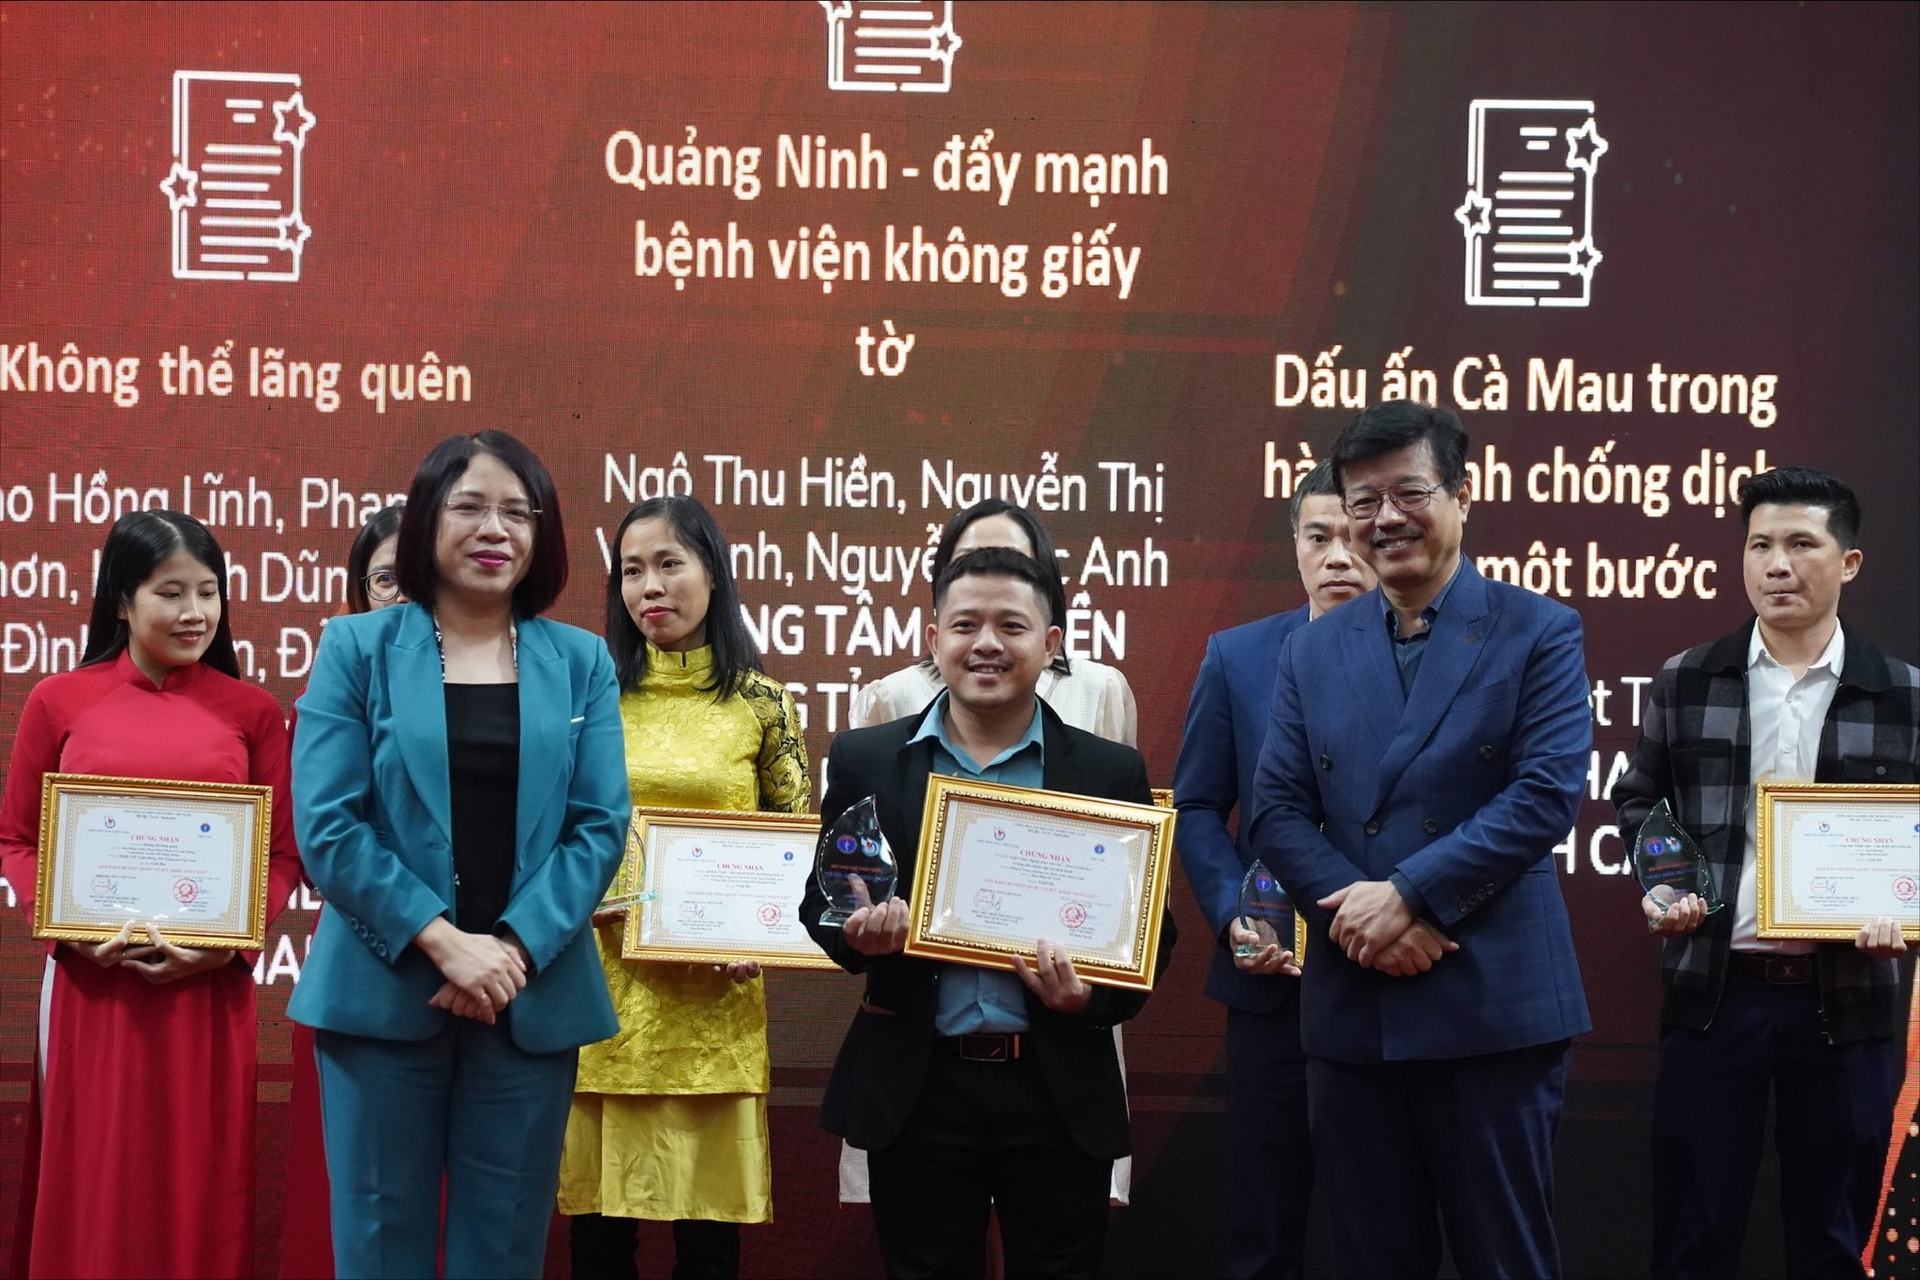 Nhóm PV Đào Hồng Lĩnh, Phan Hoài Nhơn của Kênh VOV Giao thông (Đài Tiếng nói Việt Nam) đã đạt giải Ba, Giải báo chí toàn quốc 'Vì sức khỏe nhân dân' với tác phẩm 'Không thể lãng quên'.